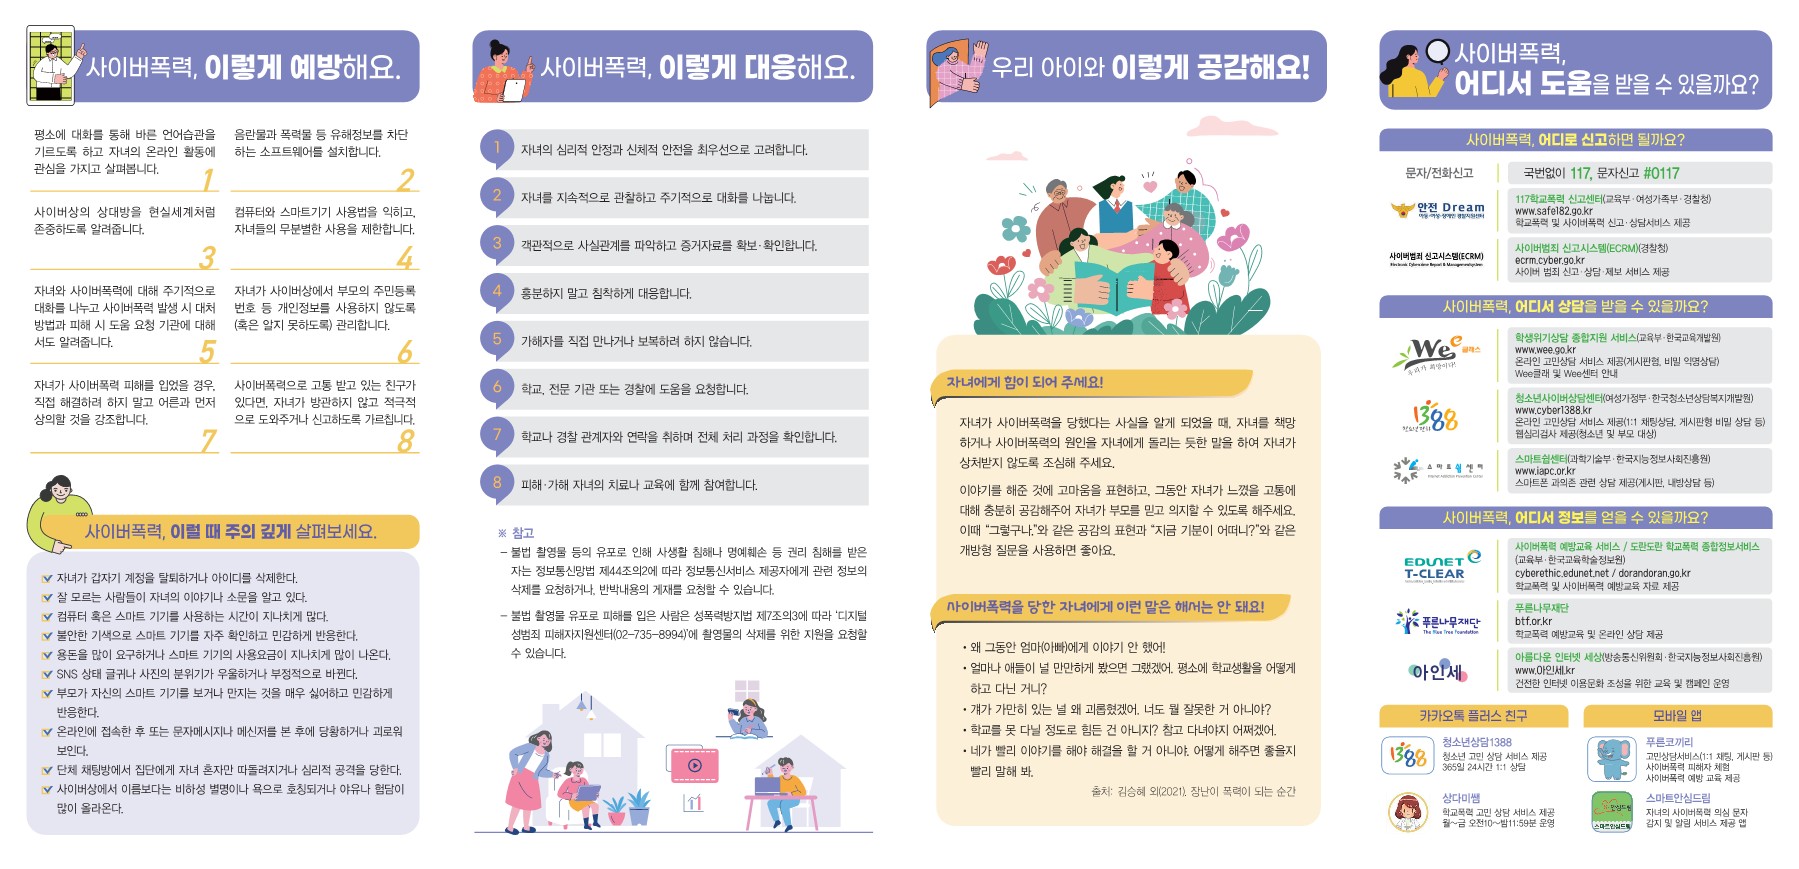 2022년 사이버폭력 예방 대응 가이드 리플릿_학부모용_2